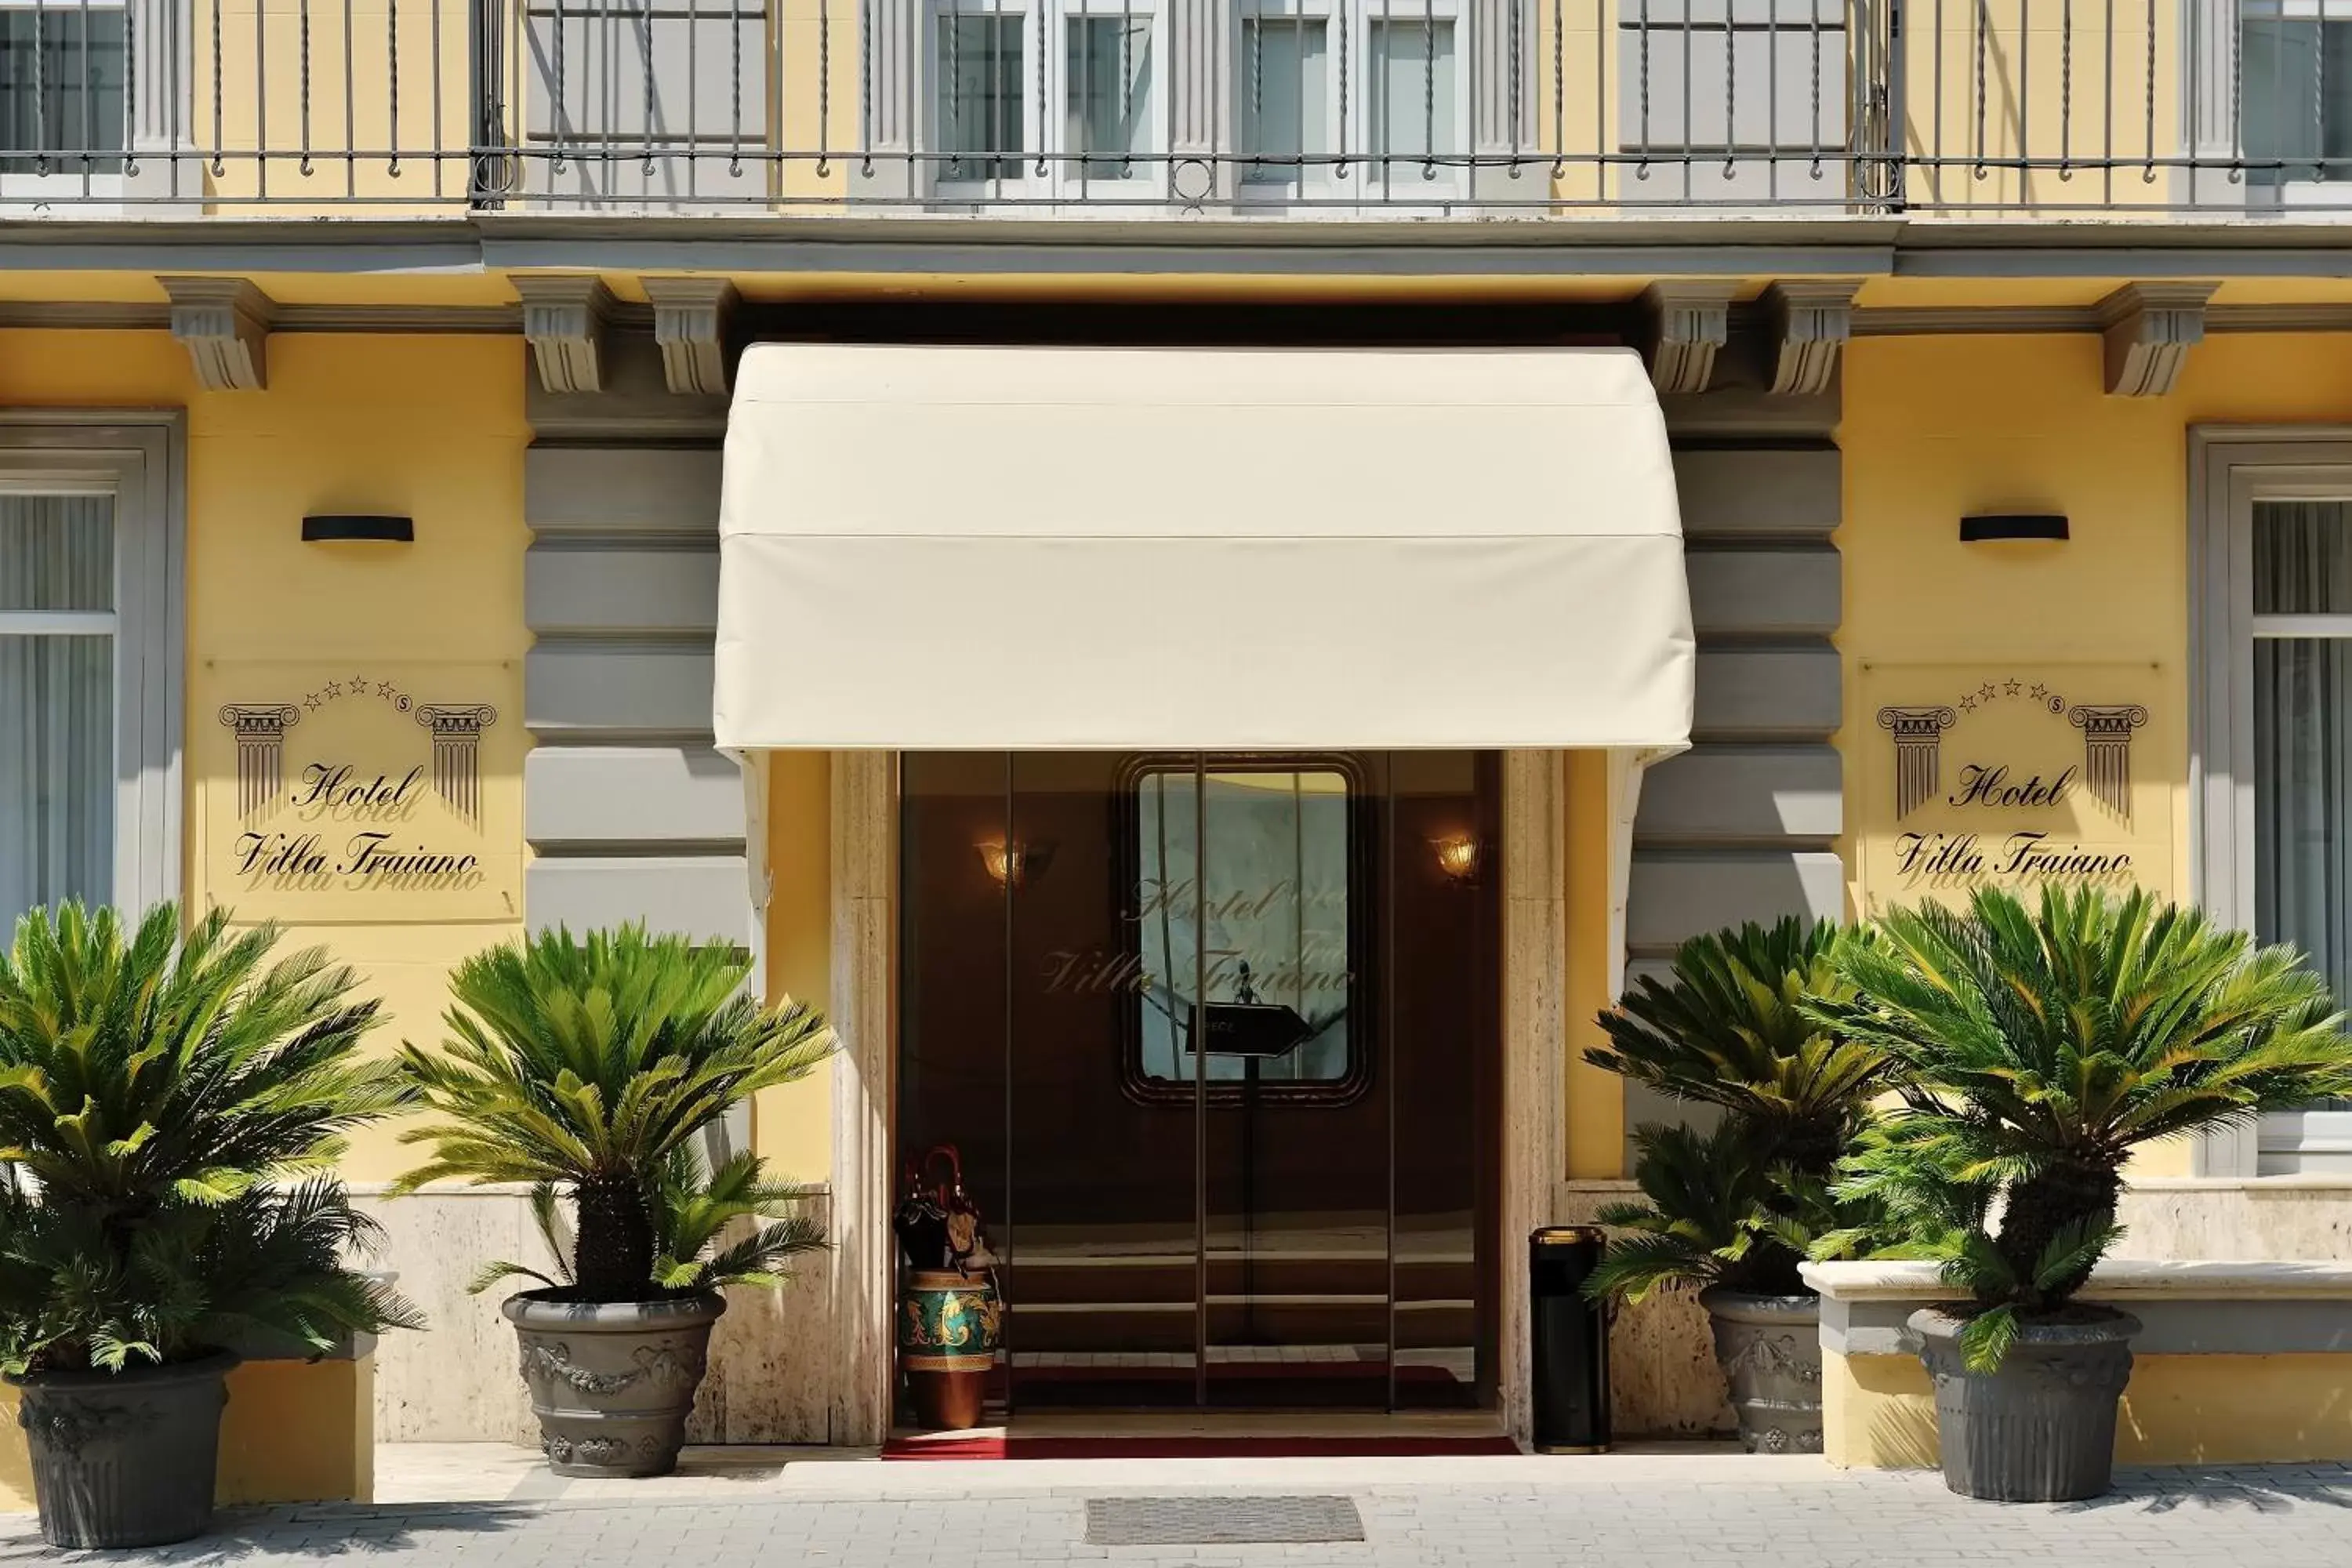 Facade/entrance in Hotel Villa Traiano